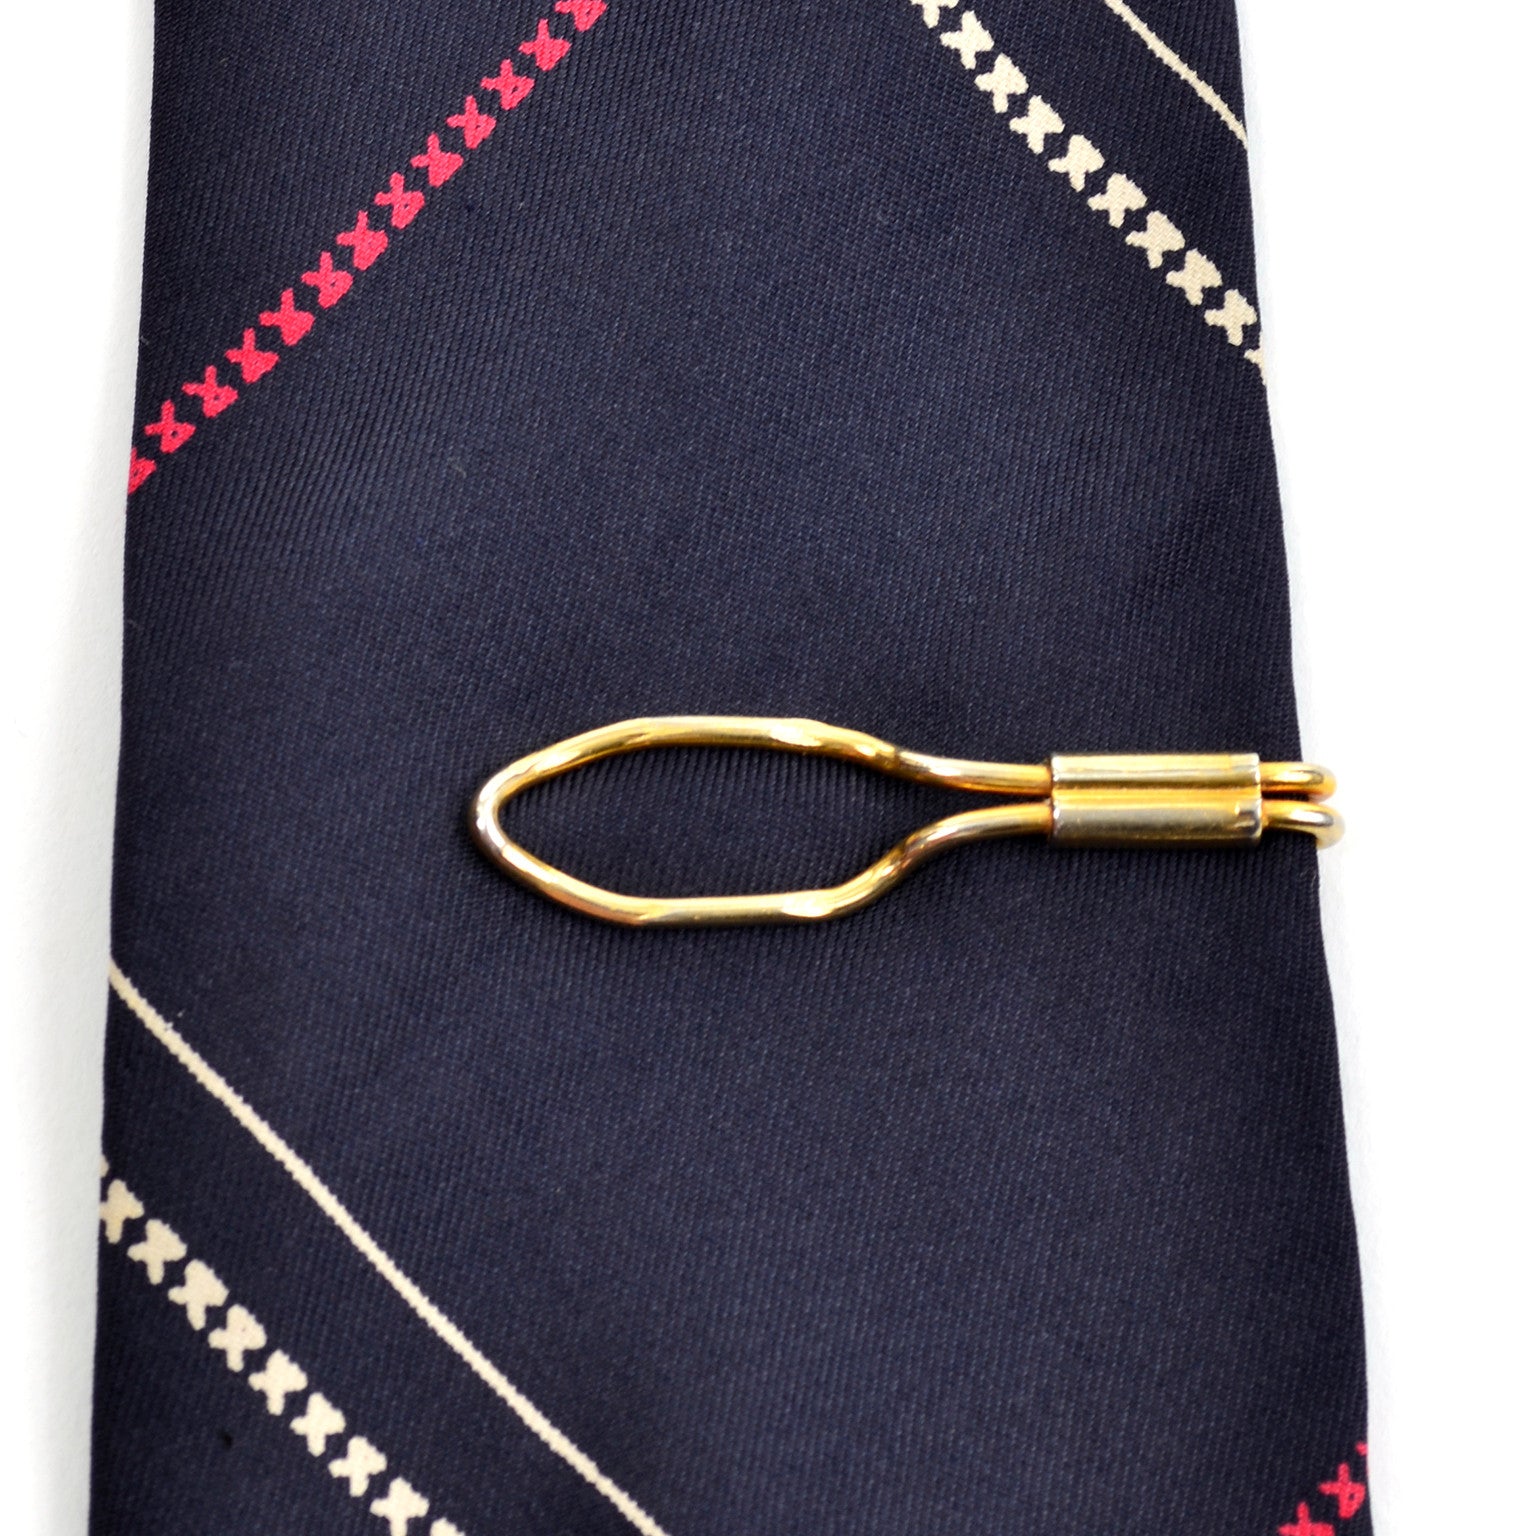 Vintage KREMENTZ USA Tie Bar Tie Clip Gold Rolled Textured